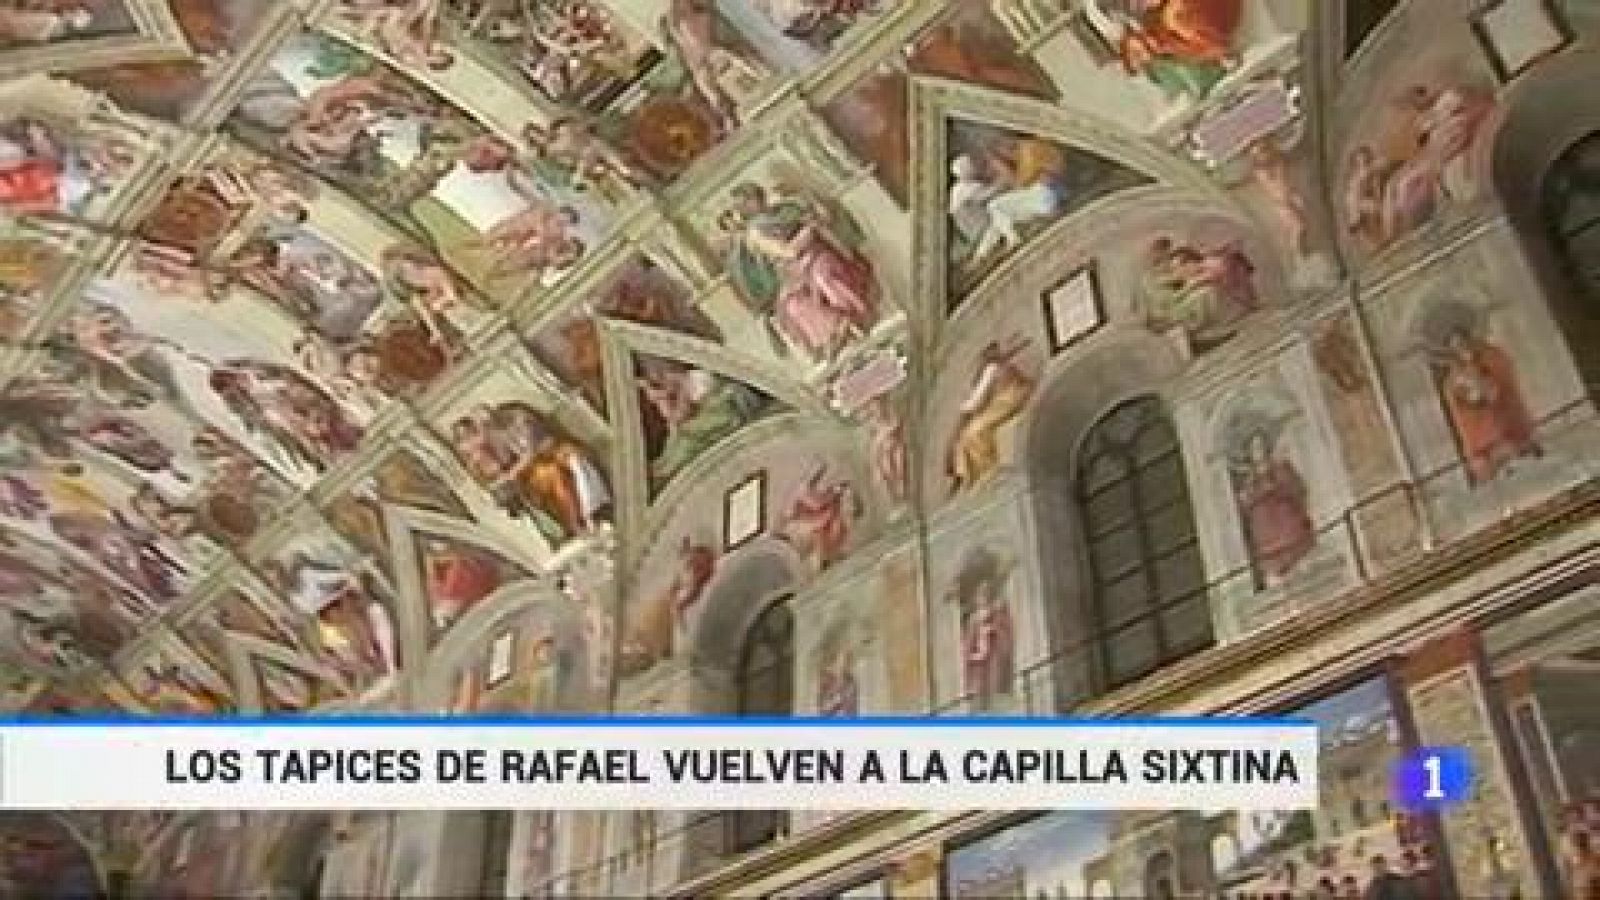  Los tapices de Rafael vuelven a rivalizar con Miguel Ángel en la Capilla Sixtina